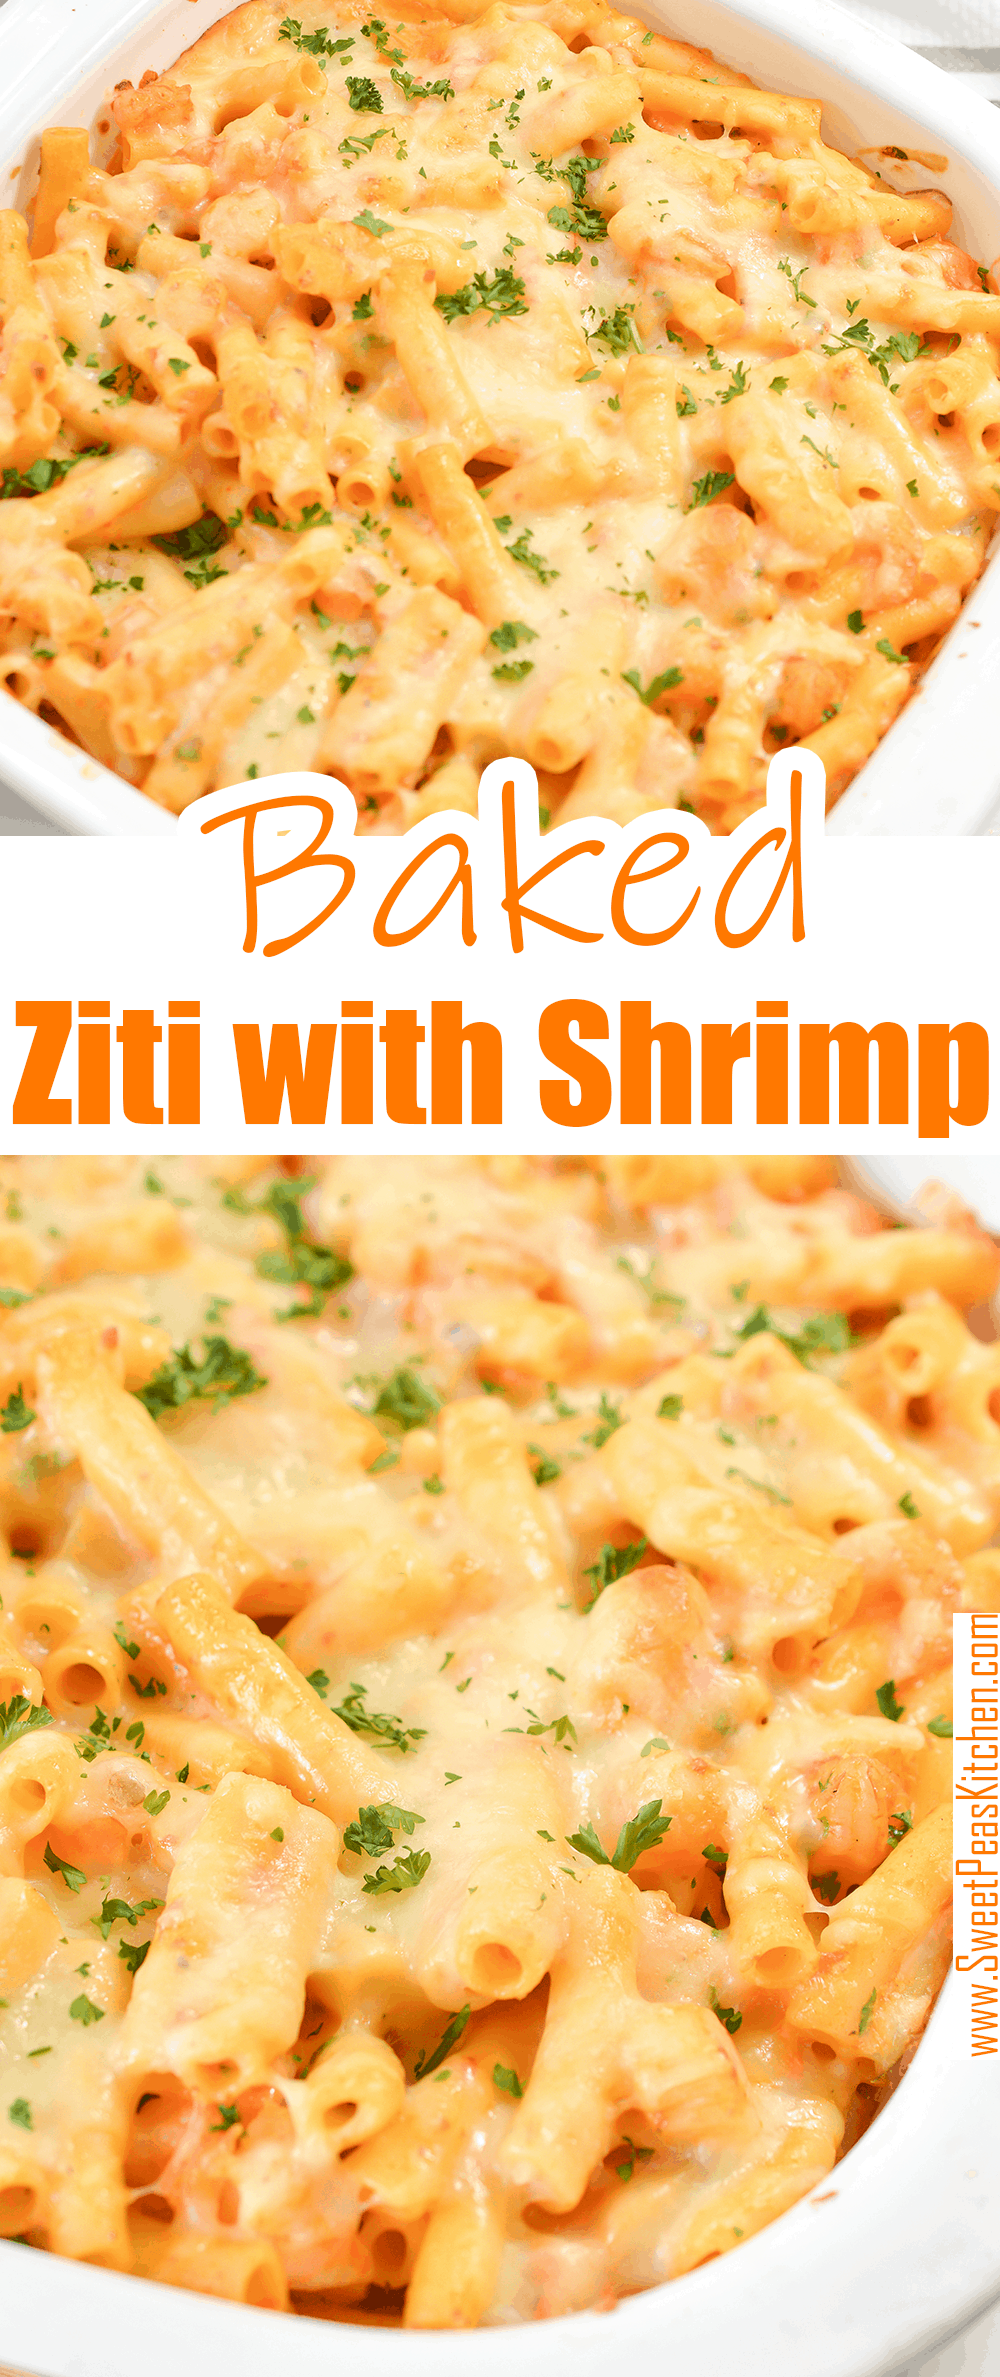 Baked Ziti with Shrimp